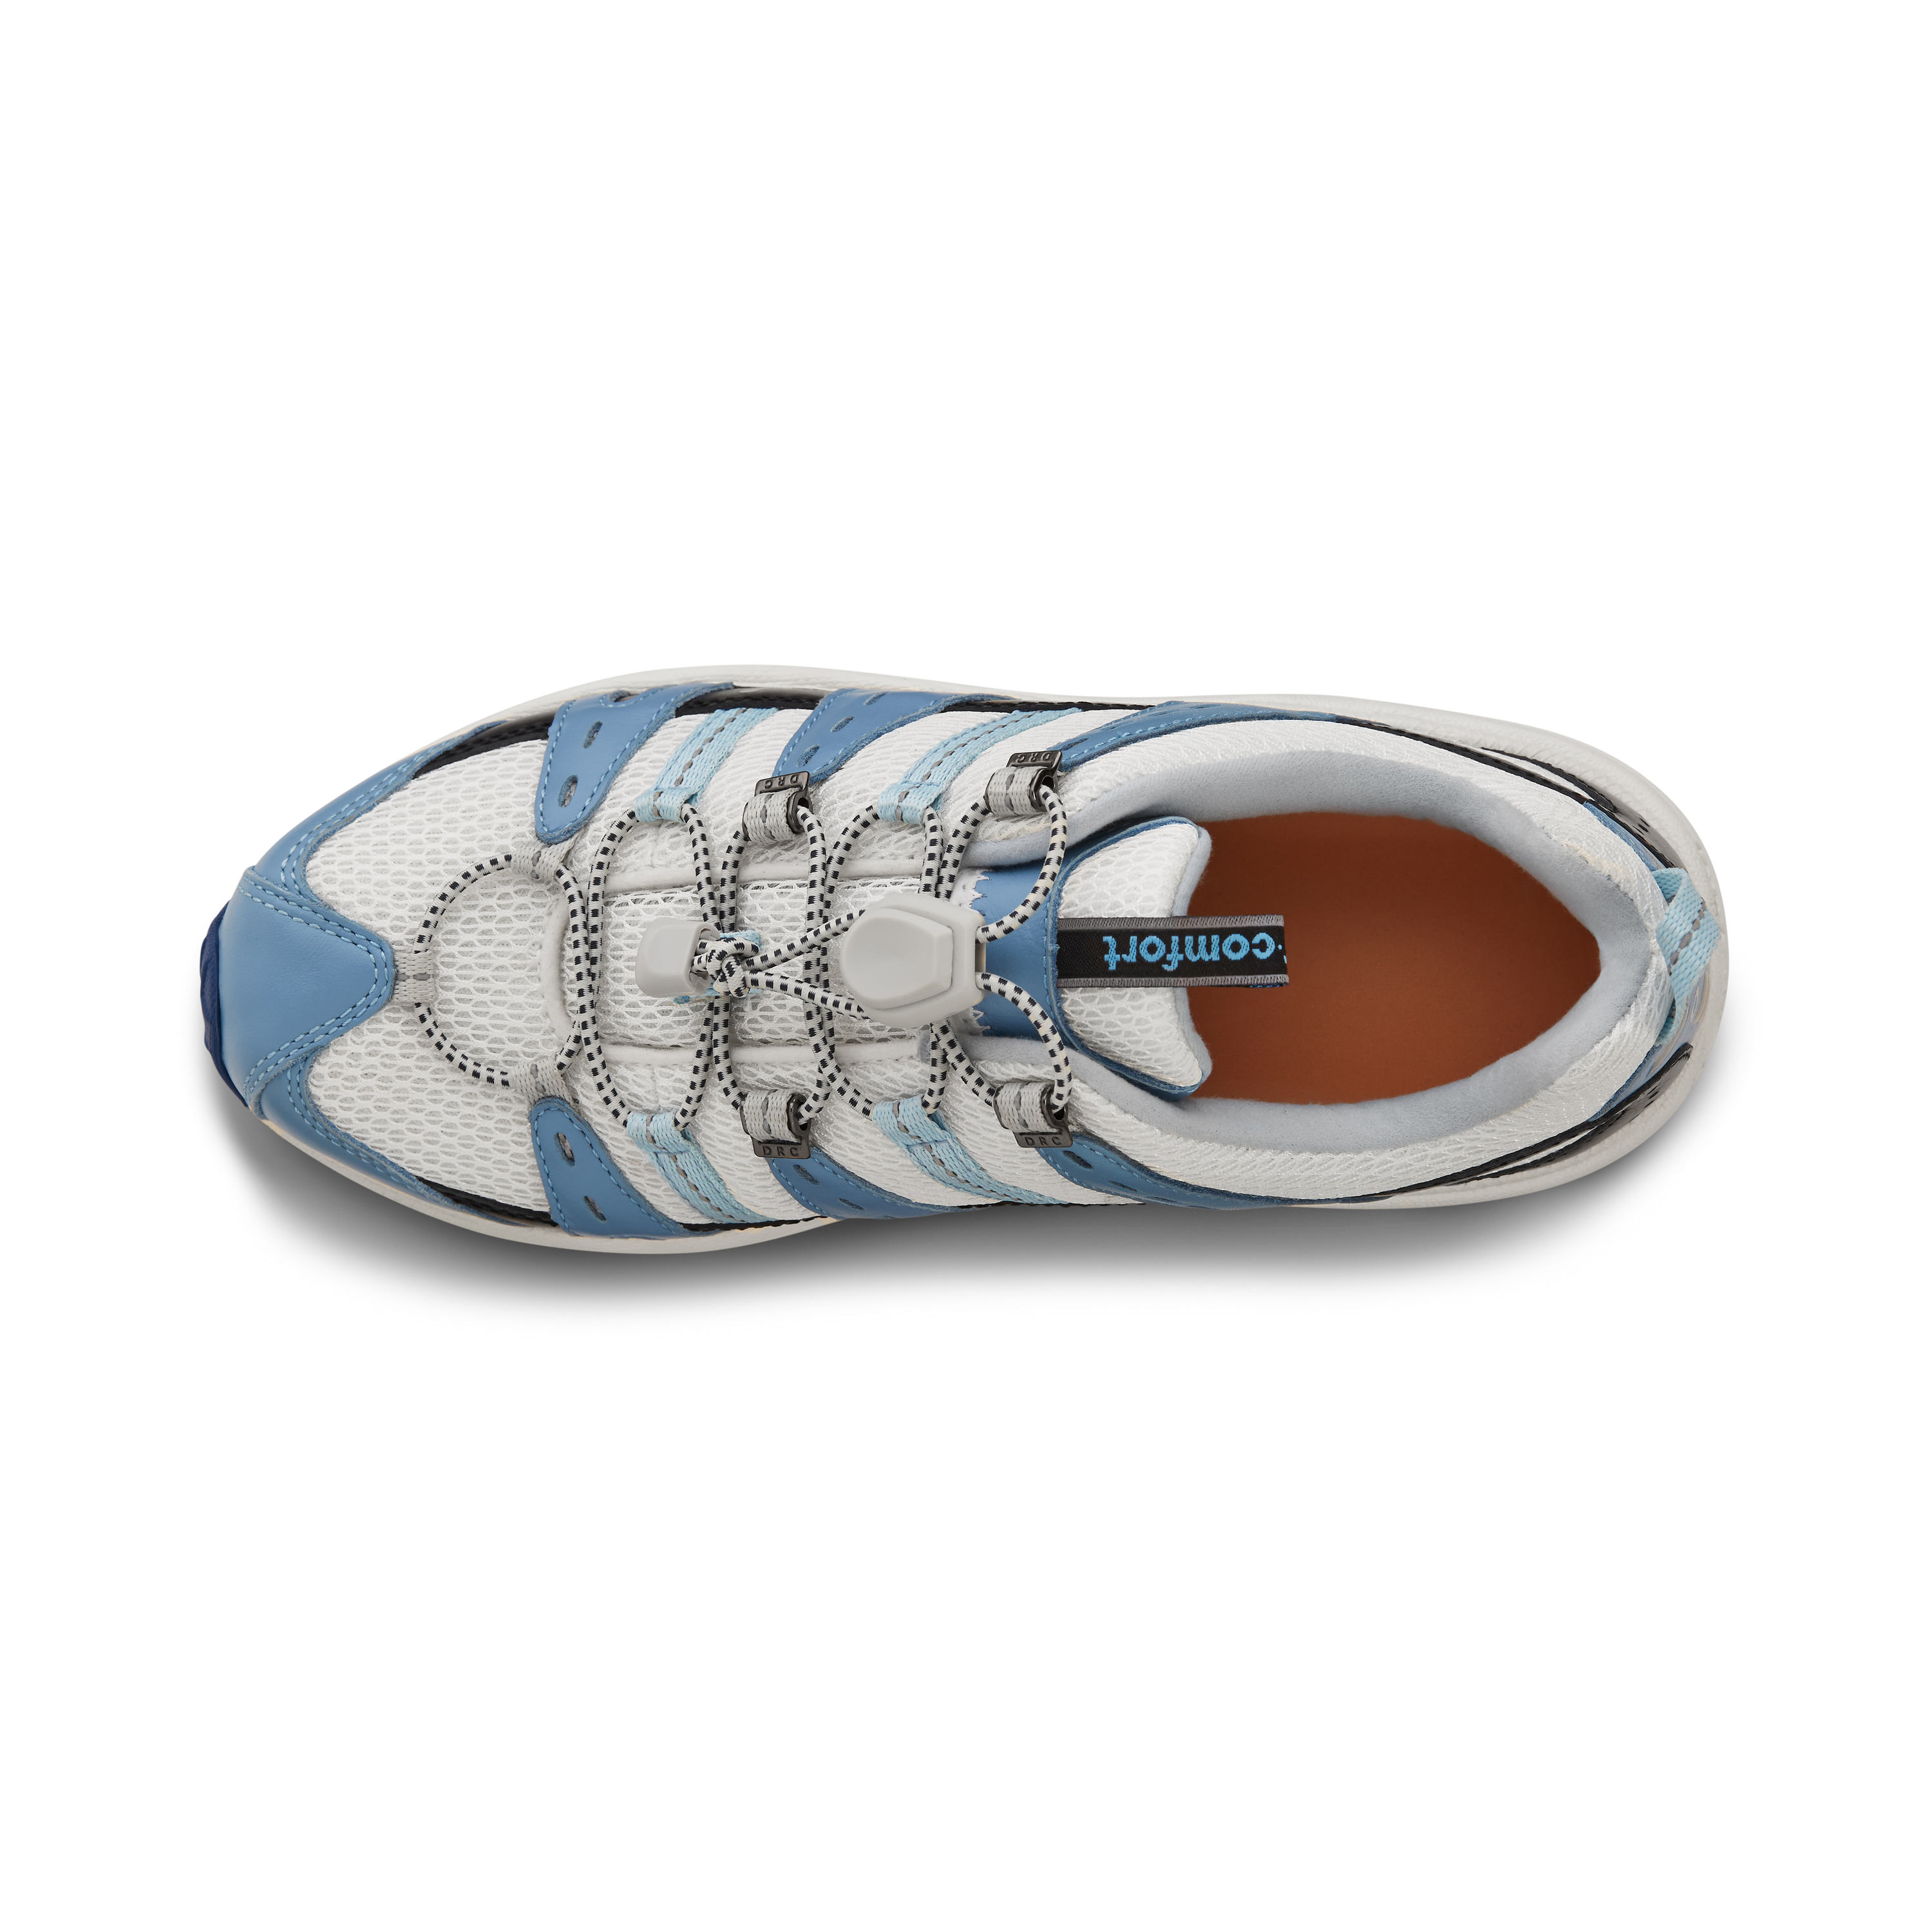 Zusatzbild DR. COMFORT® Refresh blau, oben, Orthopädische Schuhe, Besonders weicher und leichter Freizeitschuh